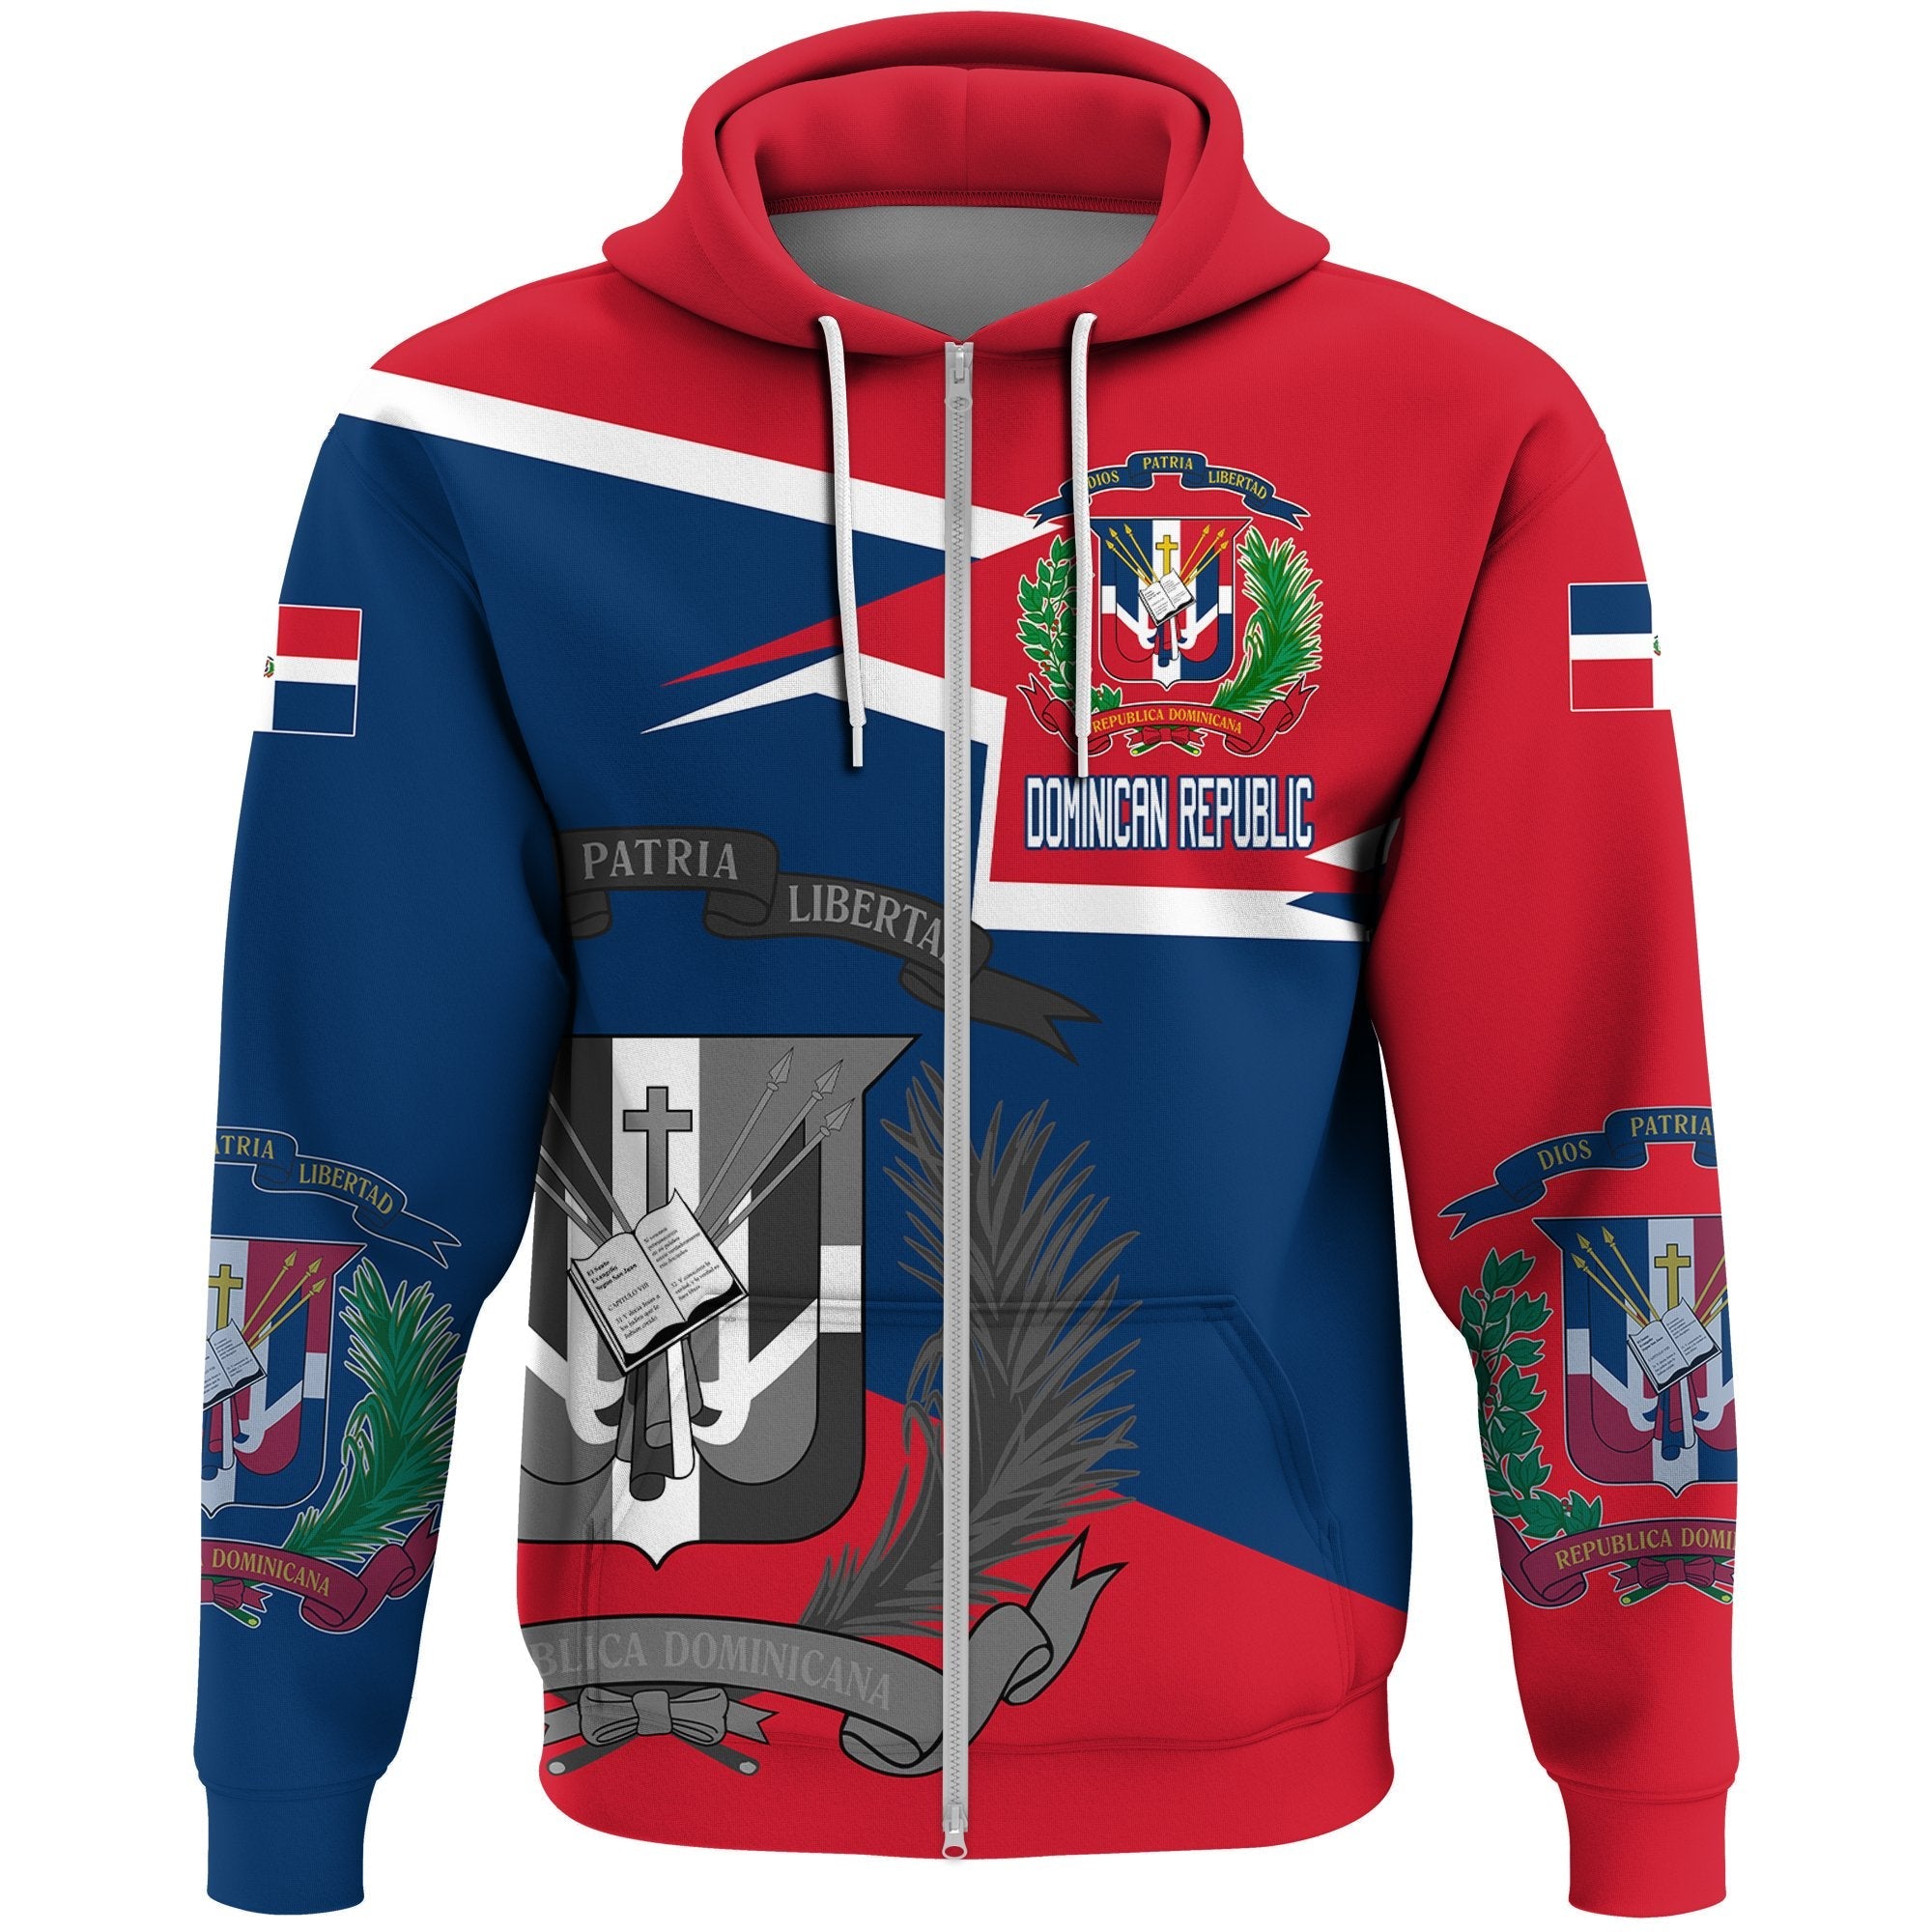 dominican-republic-coat-of-arms-zip-hoodie